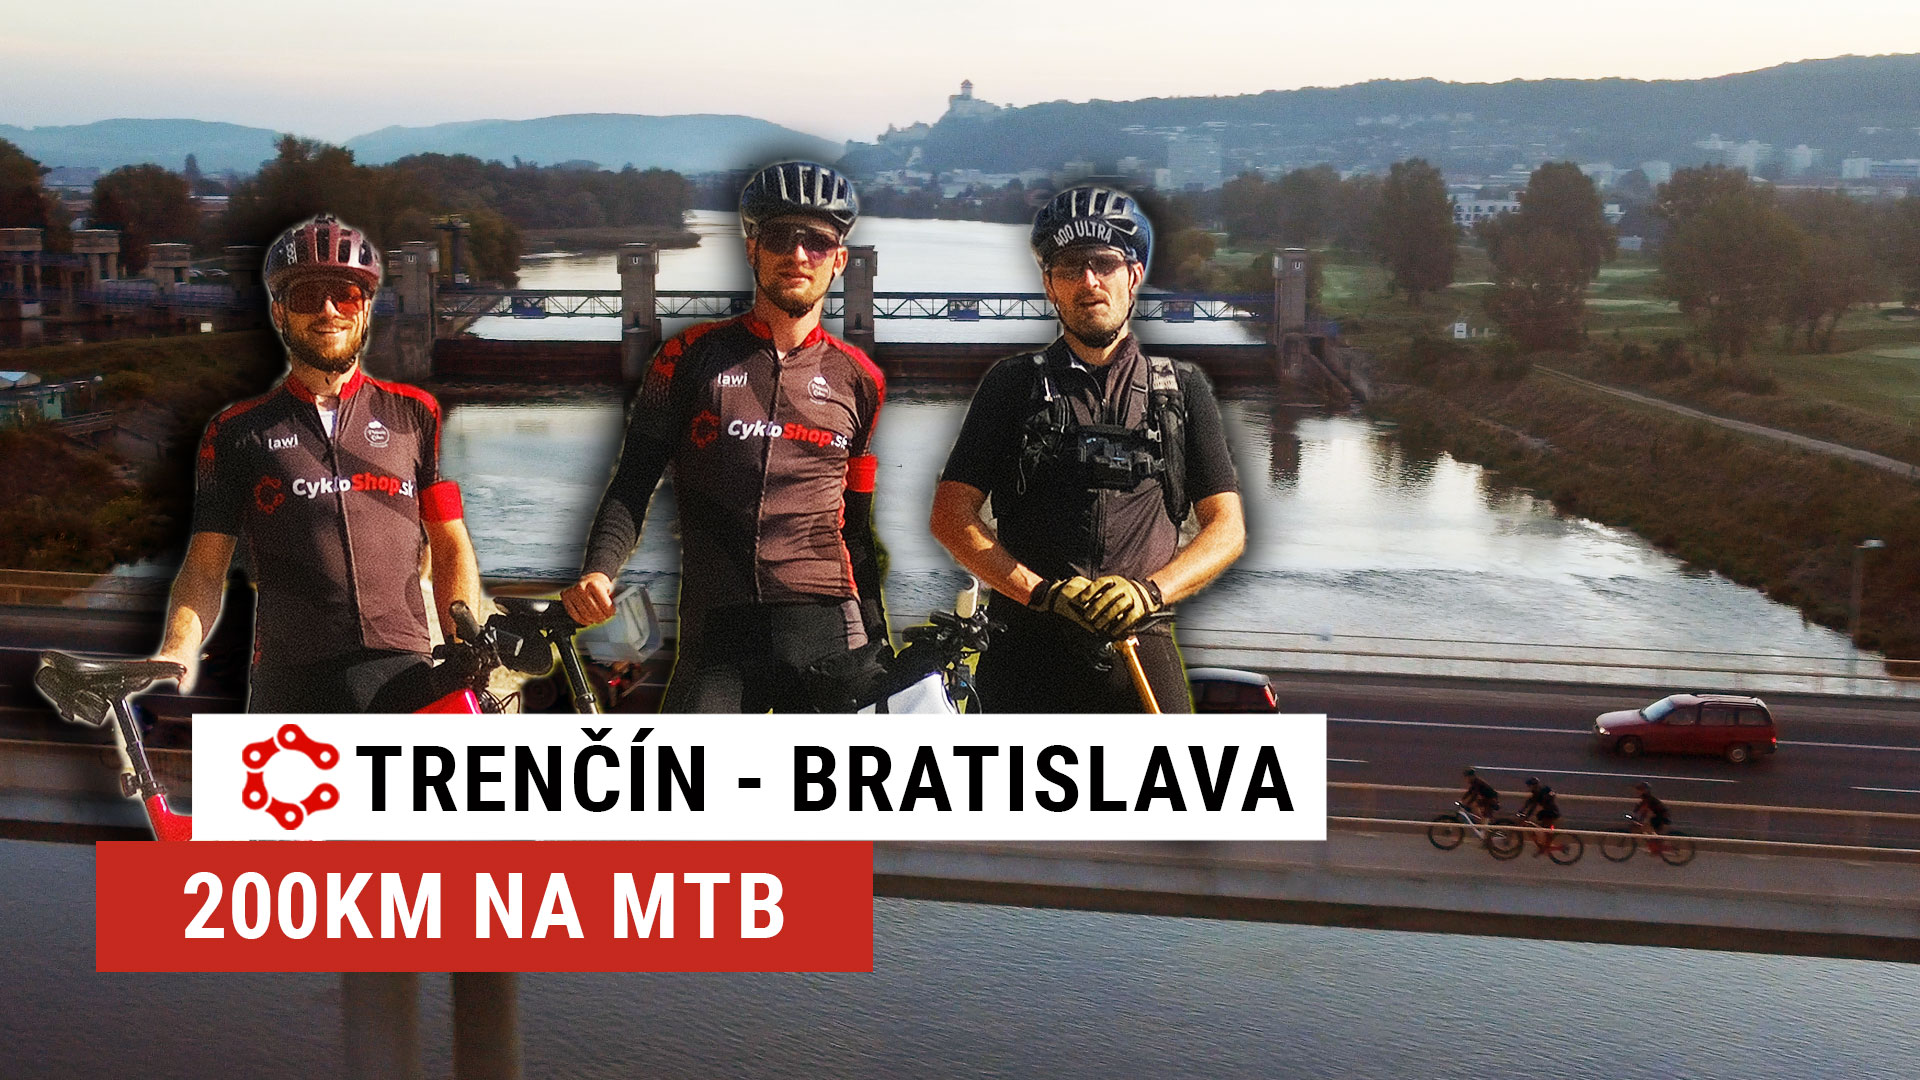 Trenčín - Bratislava, 200km a 5300m výškových na MTB